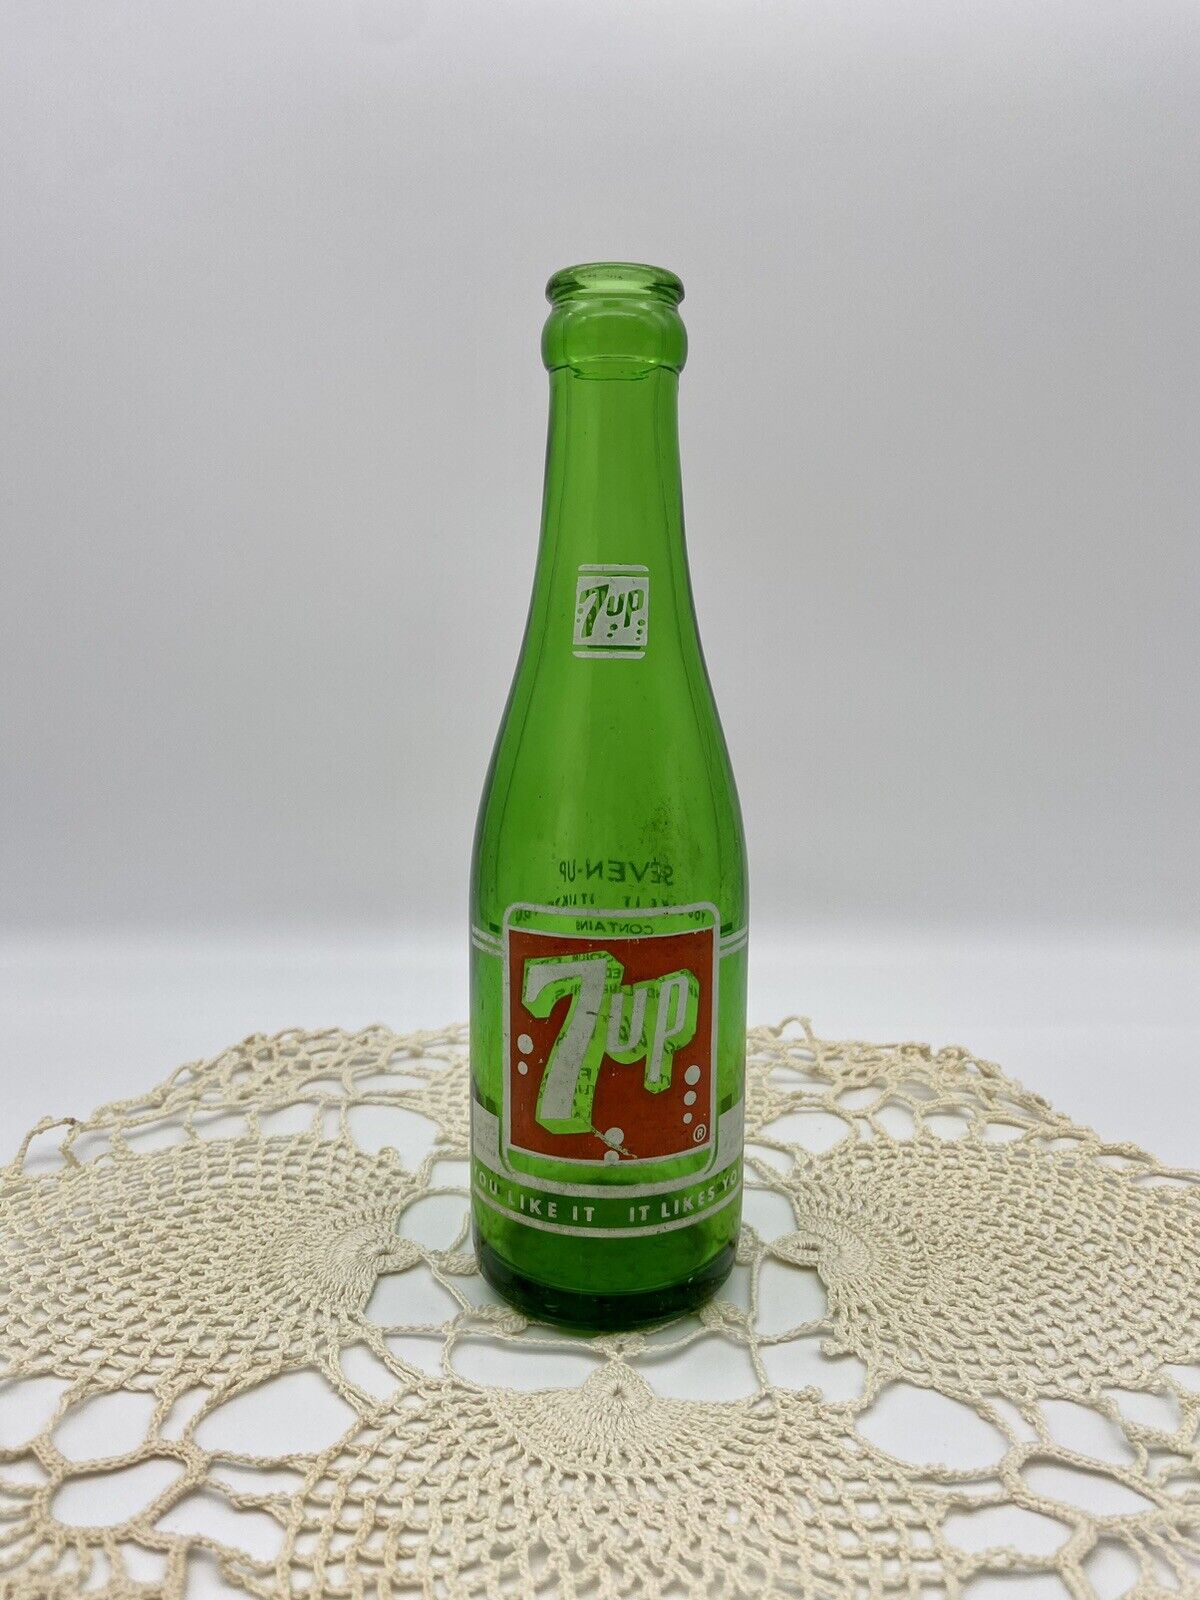 7 UP SODA Pop Bottle 7oz Gainesville/Ocala, FL 1957 green Vintage Anchor Hocking